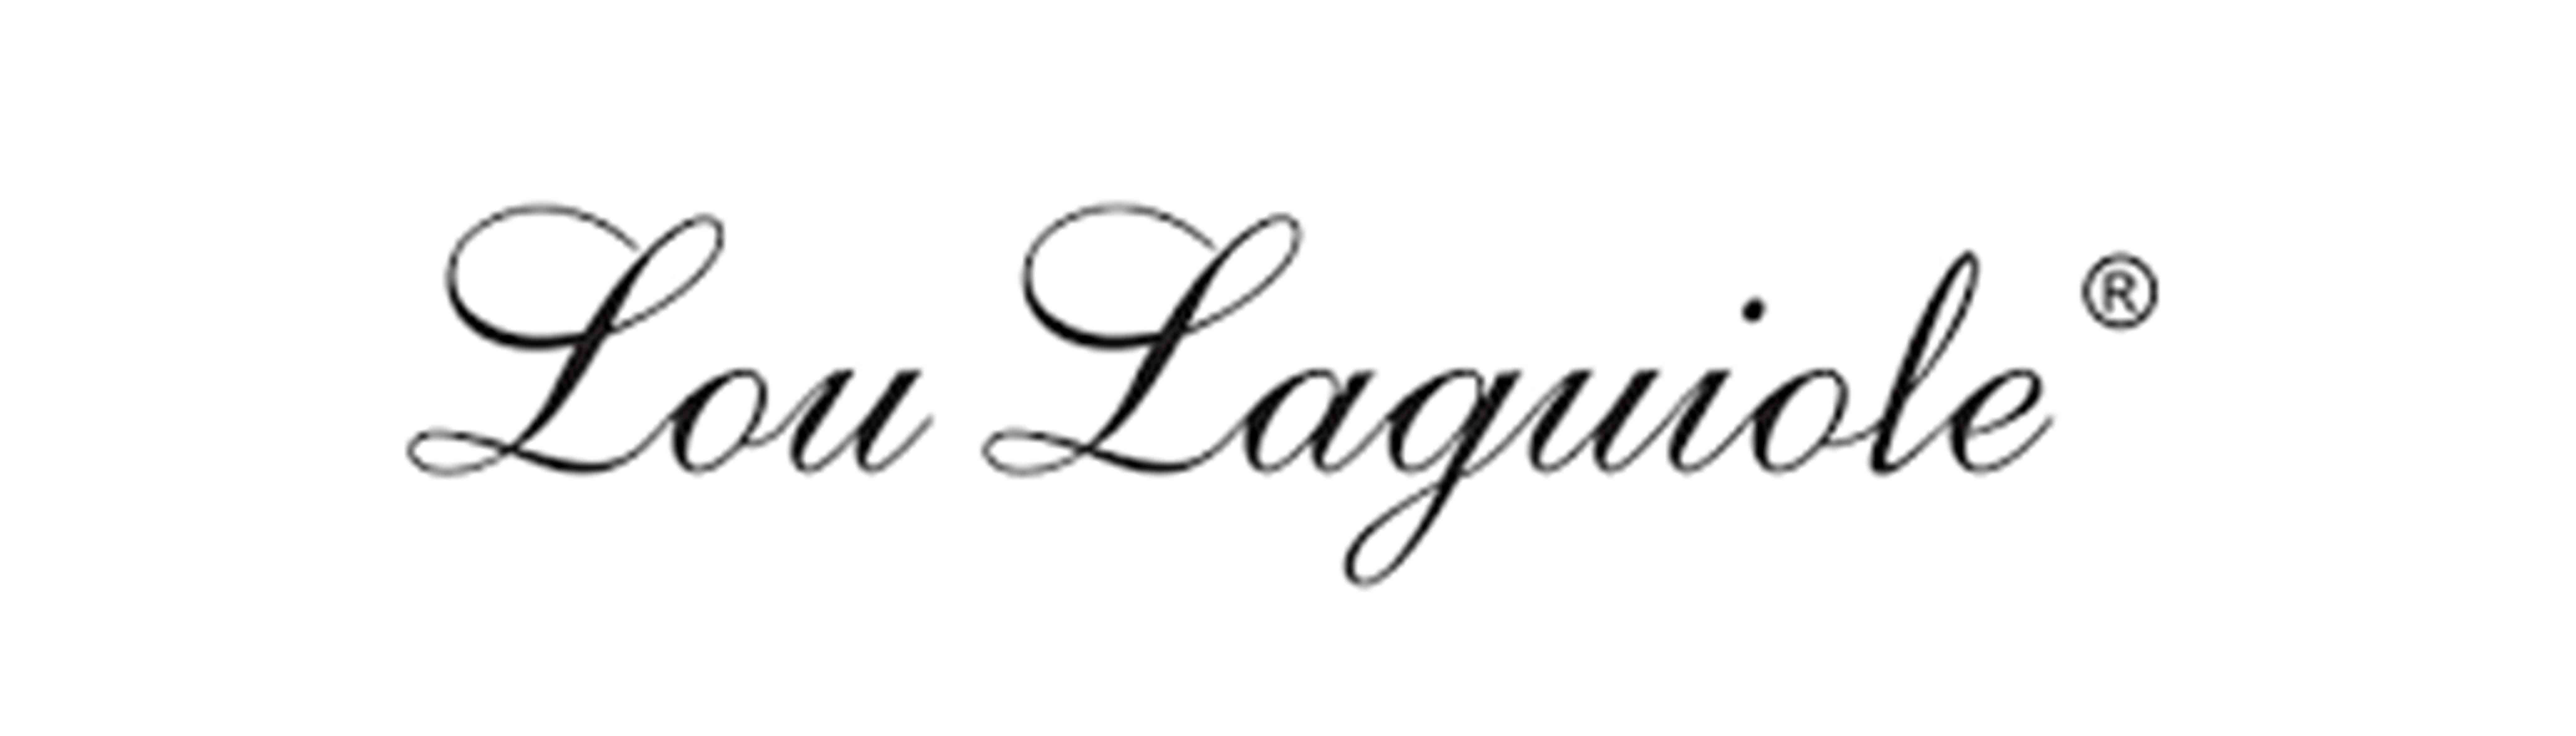 Lou Laguiole Knife Set W Block, Grey, 6-Pack - Lou Laguiole